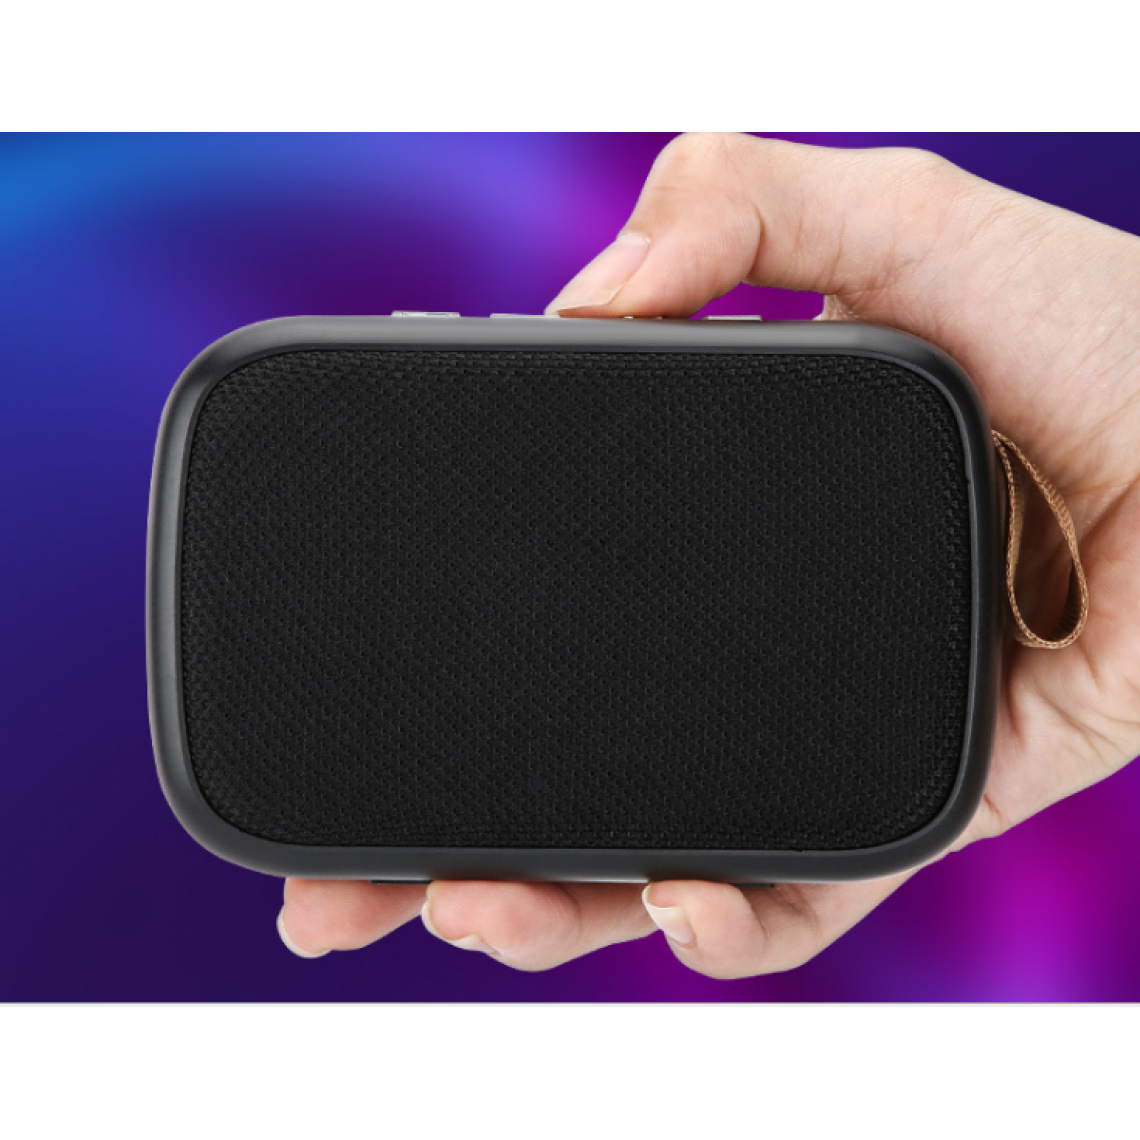 Universal - Haut-parleur Bluetooth multifonctionnel subwoofer portable sans fil musique stéréo surround haut-parleur extérieur support carte TF clé USB FM | haut-parleur portable (noir) - Hauts-parleurs